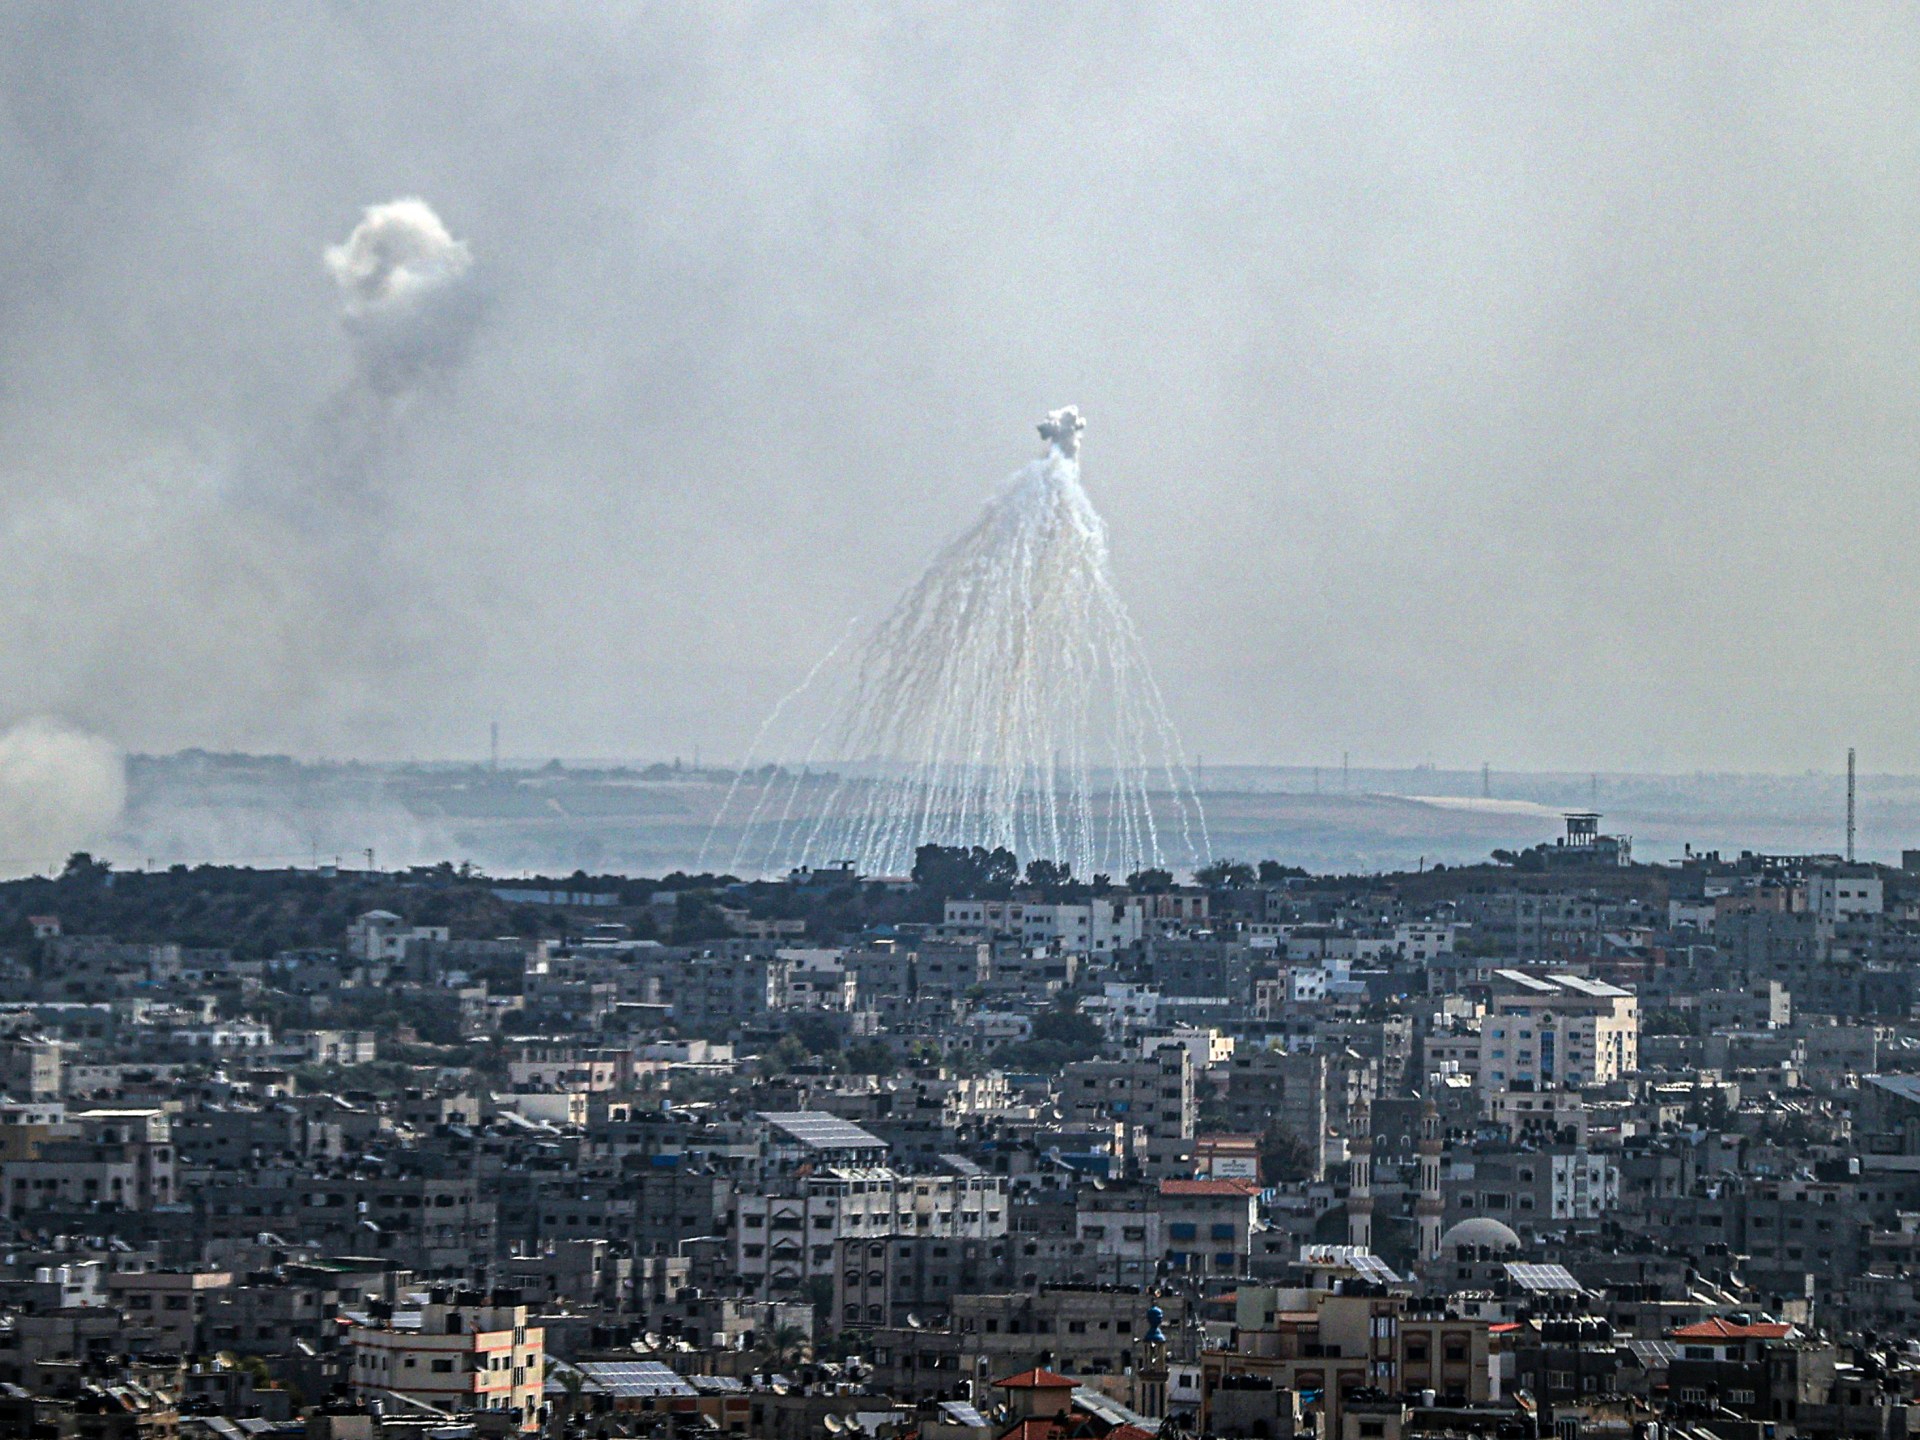 رايتس ووتش: إسرائيل استخدمت قنابل فسفورية بغزة وجنوب لبنان | أخبار – البوكس نيوز